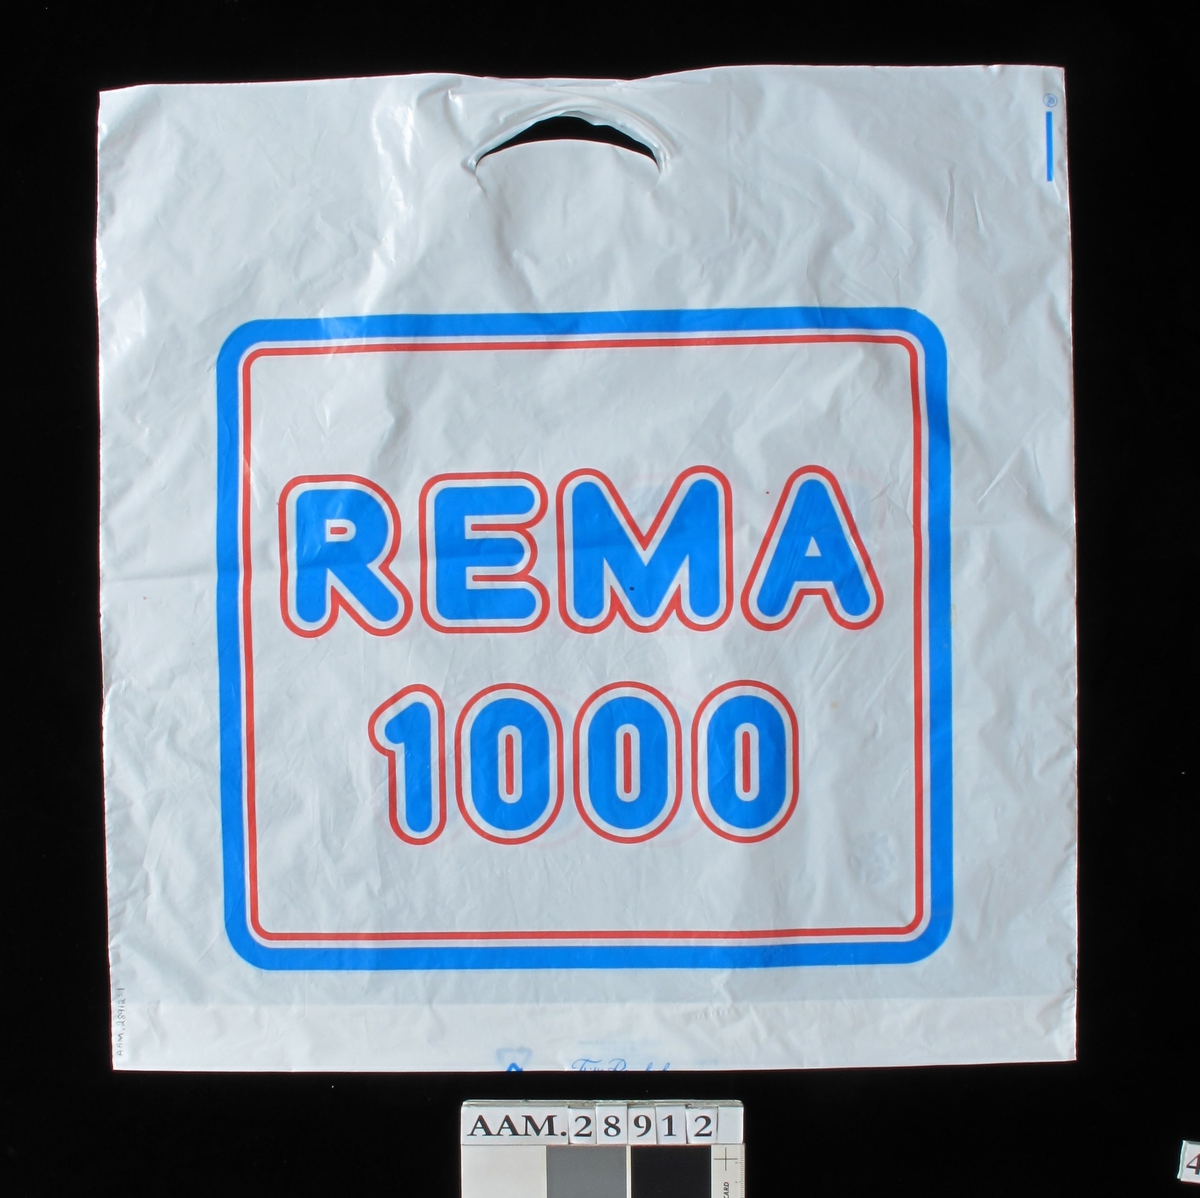 Rema 1000 -kjedens logo i rødt og blått